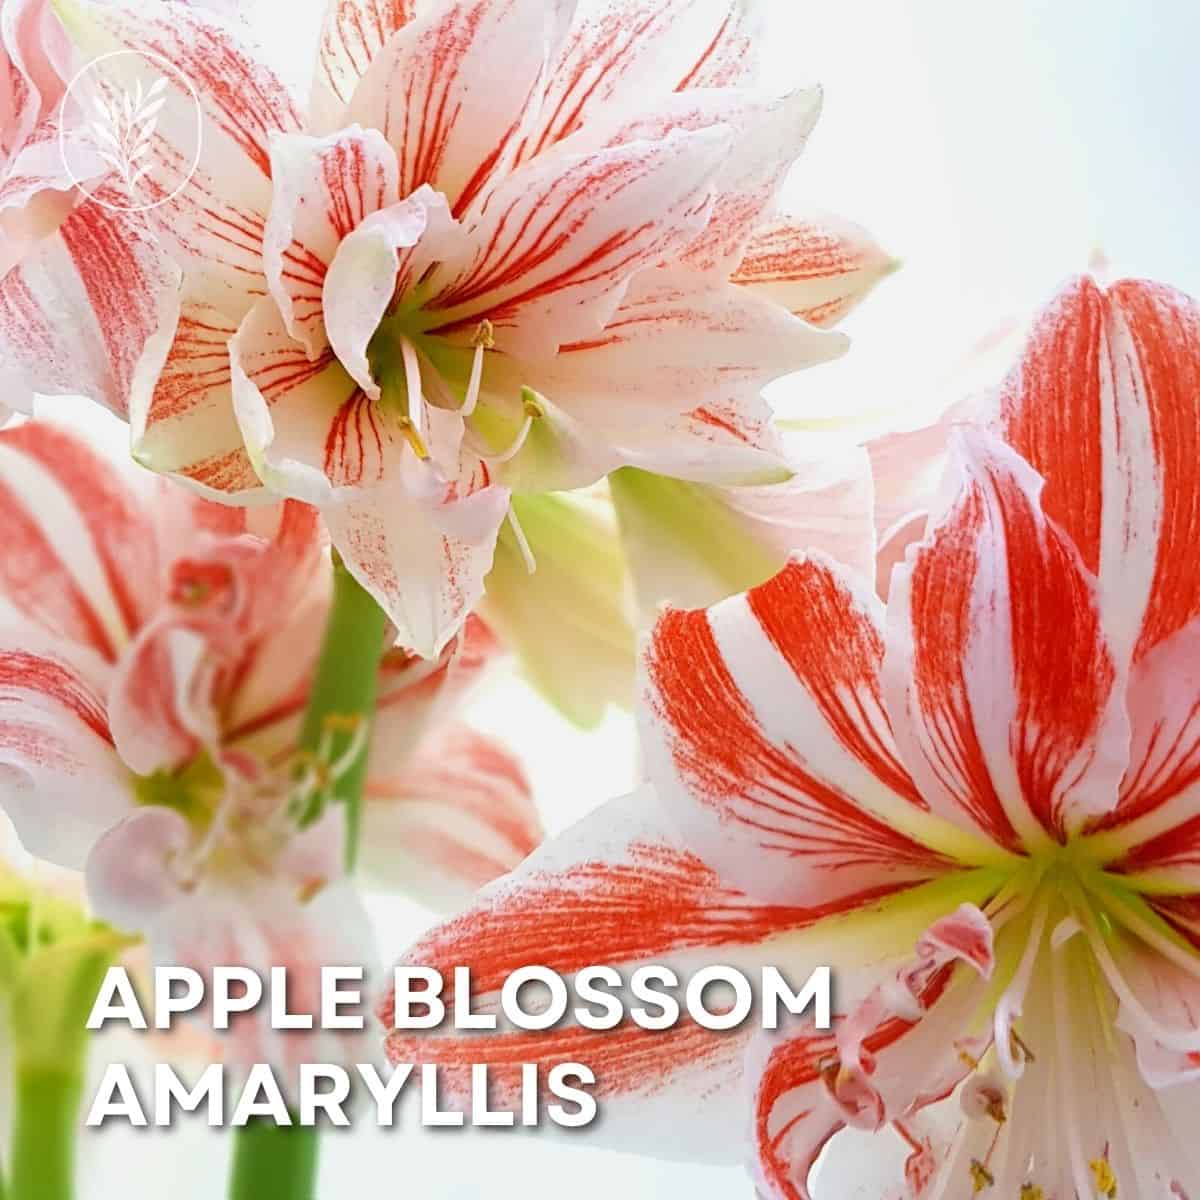 Apple blossom amaryllis via @home4theharvest